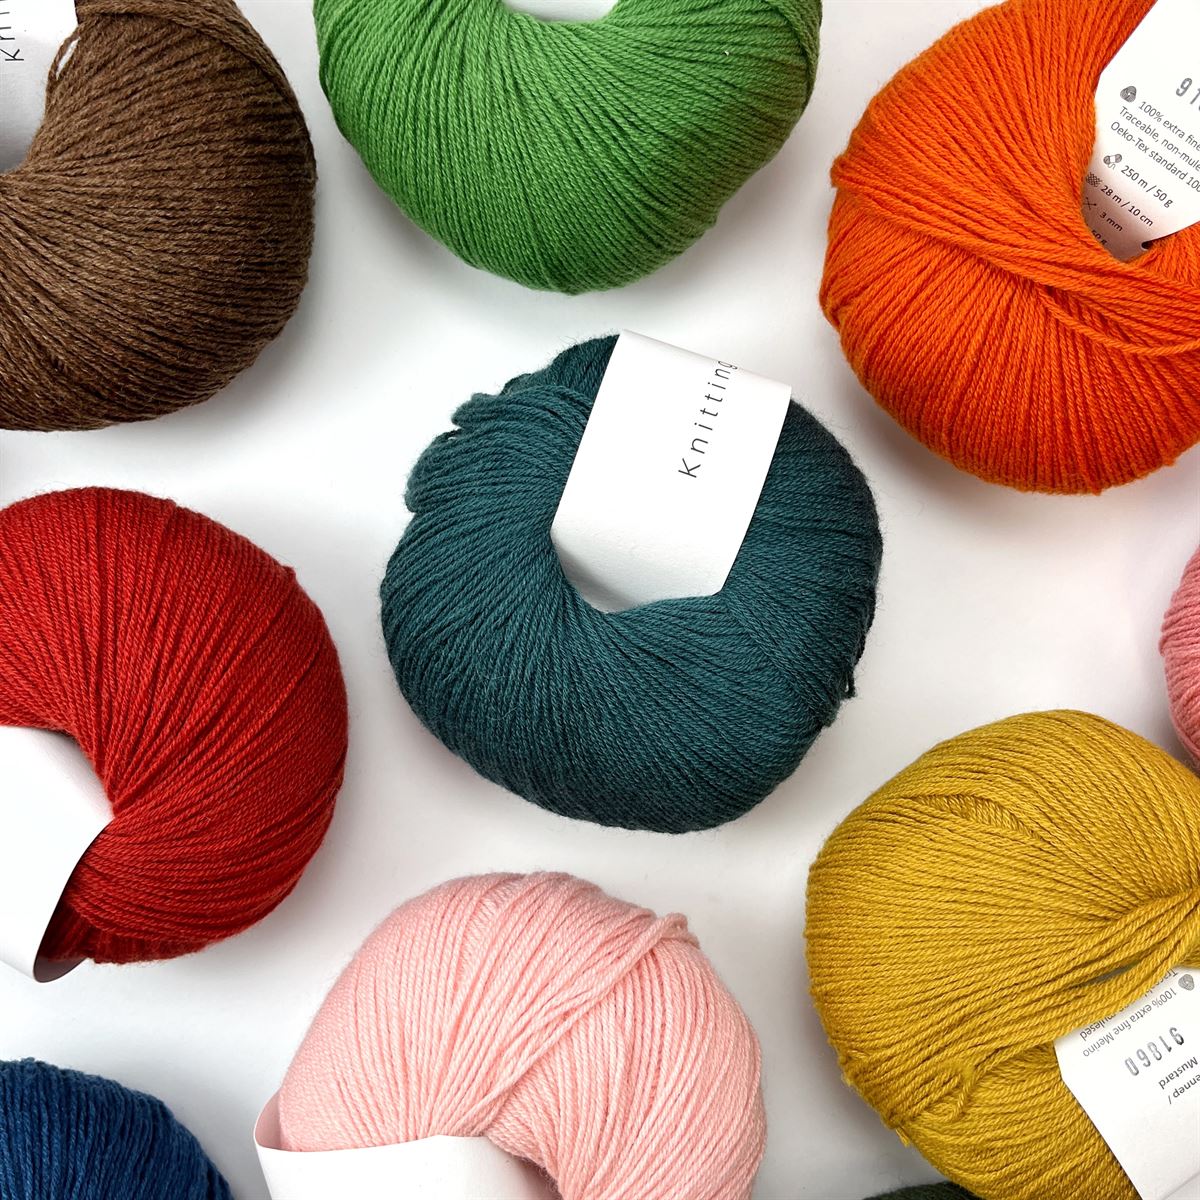 tekst Ambient De er Knitting for Olive Merino garn - Køb det populære garn her